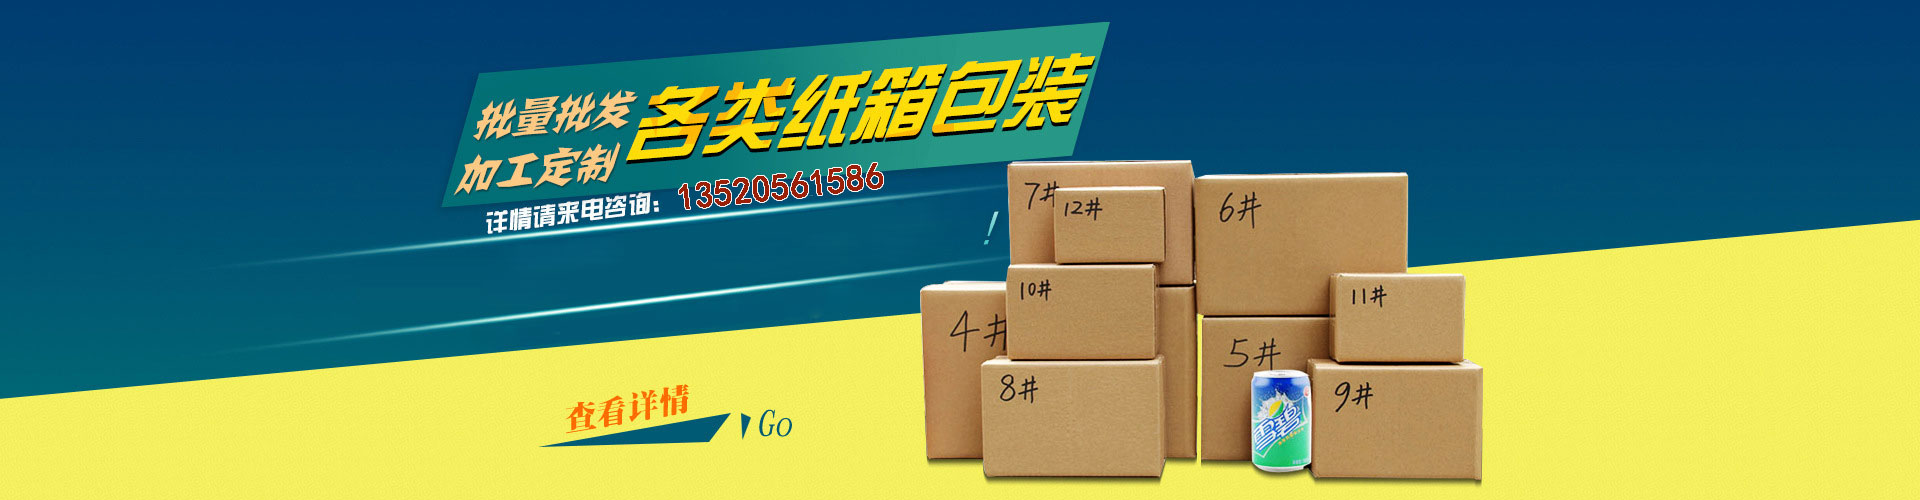 北京纸箱包装厂|廊坊纸箱包装厂